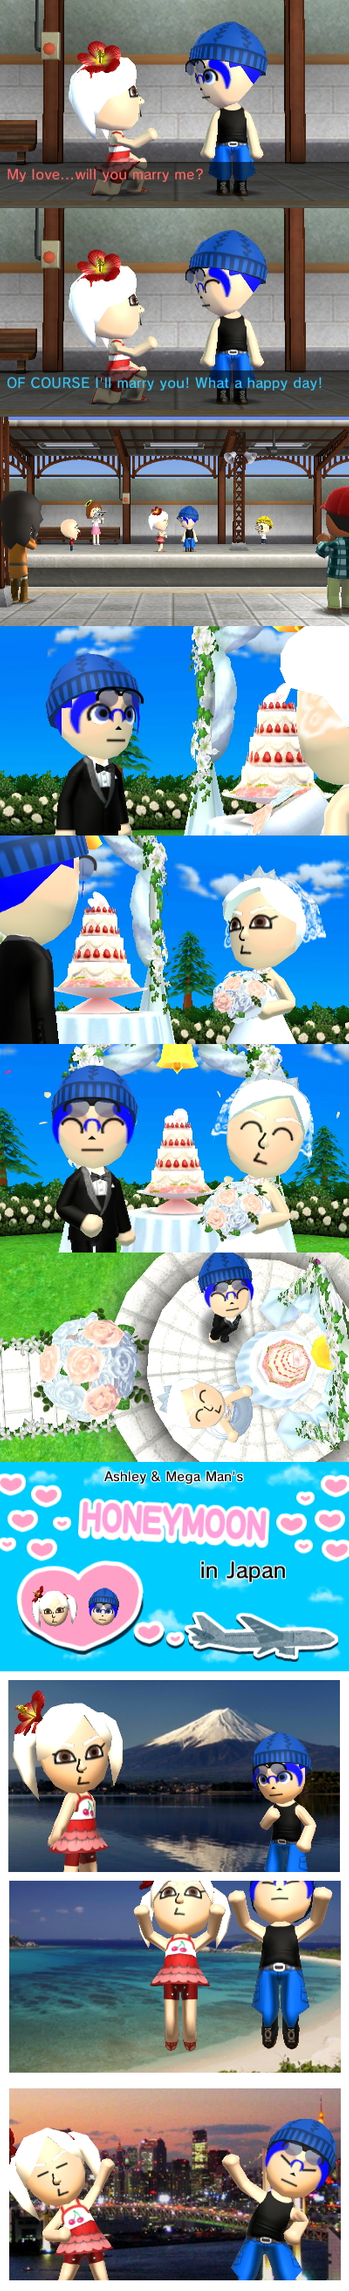 Tomodachi life wedding glitch